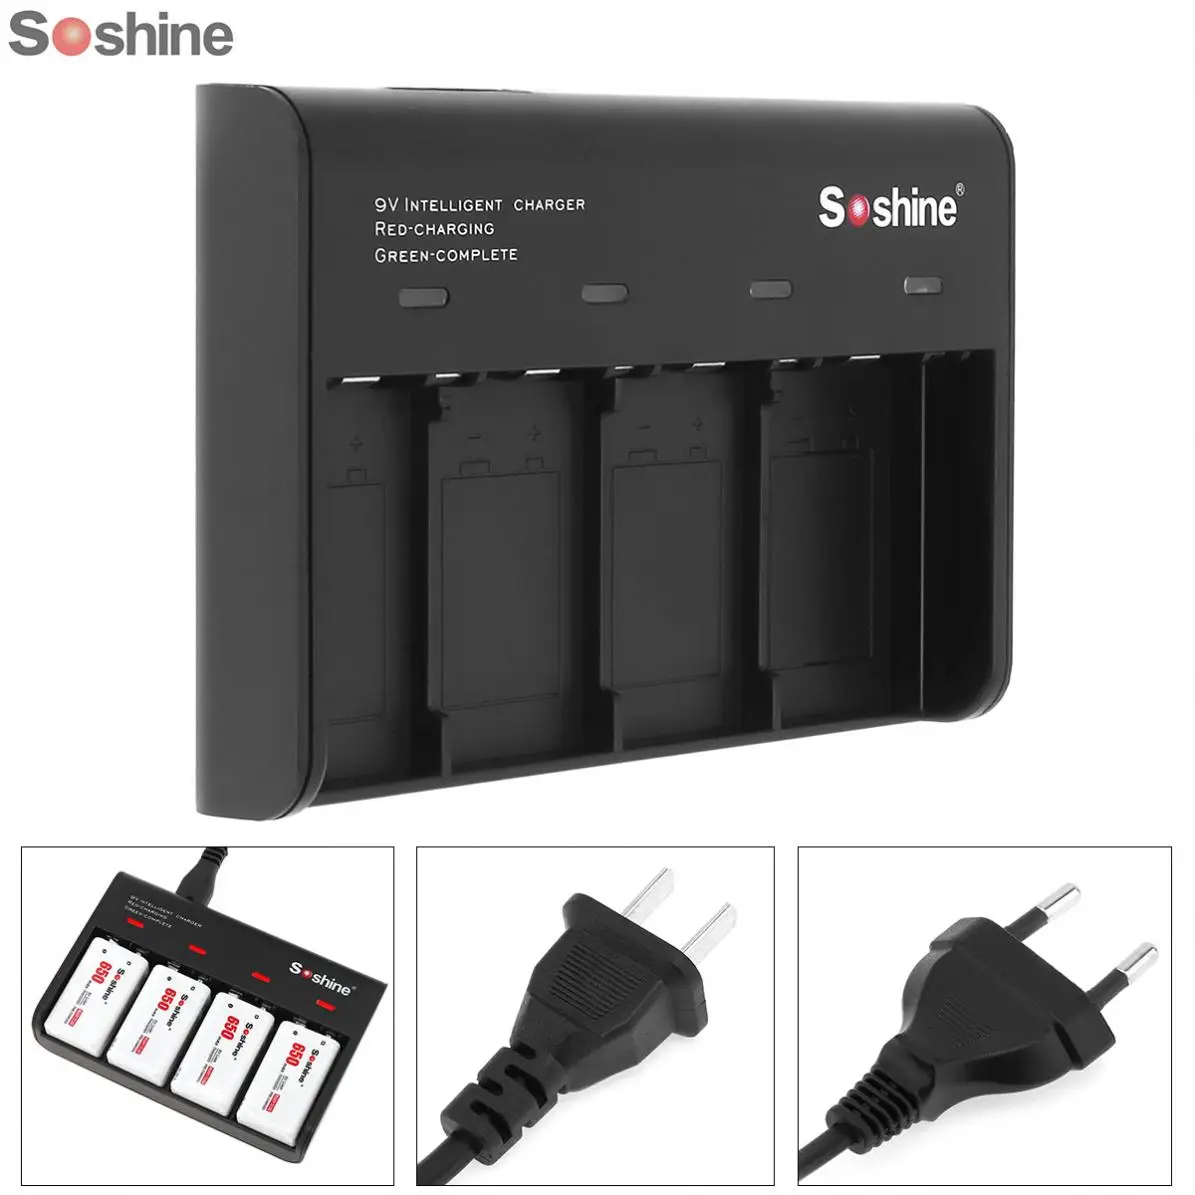 Pardavimo Soshine Juoda 4 Slots Smart Baterijų Kroviklis su LED Indikatoriumi 9V Li-ion / Ni-MH / LiFePO4 Akumuliatoriai